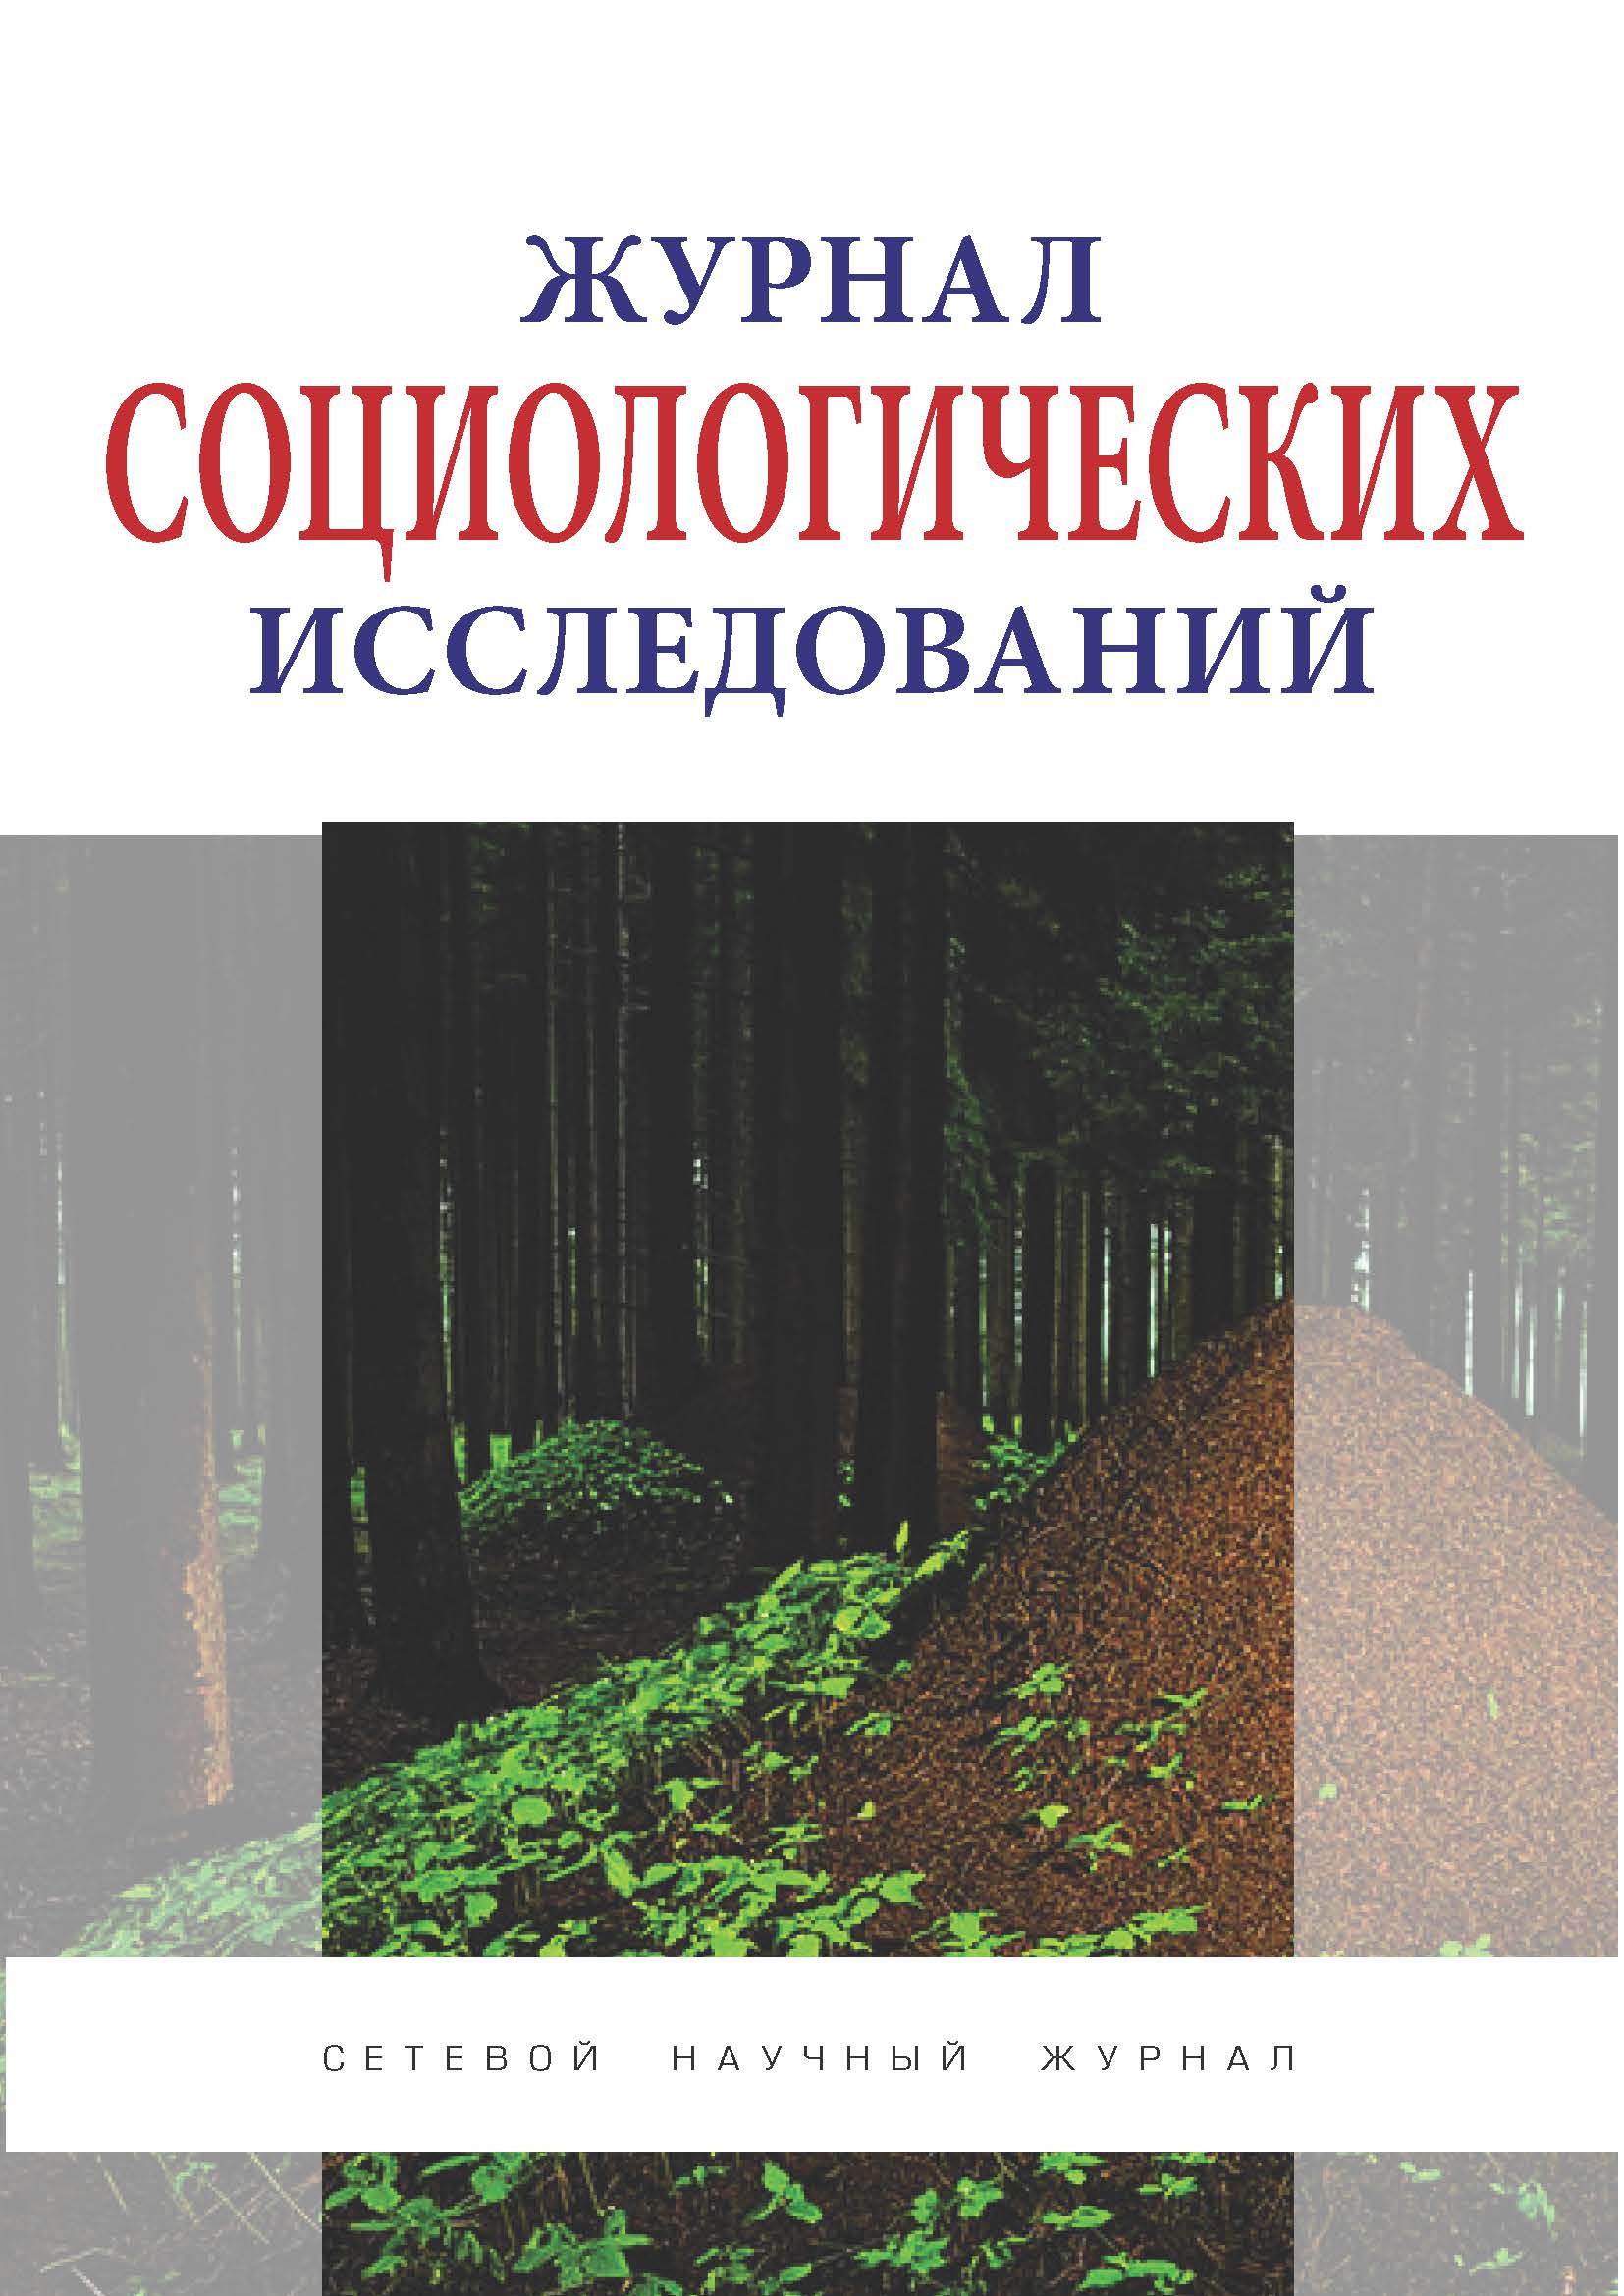             Анализ теории личности в российской социологии: история и современность
    